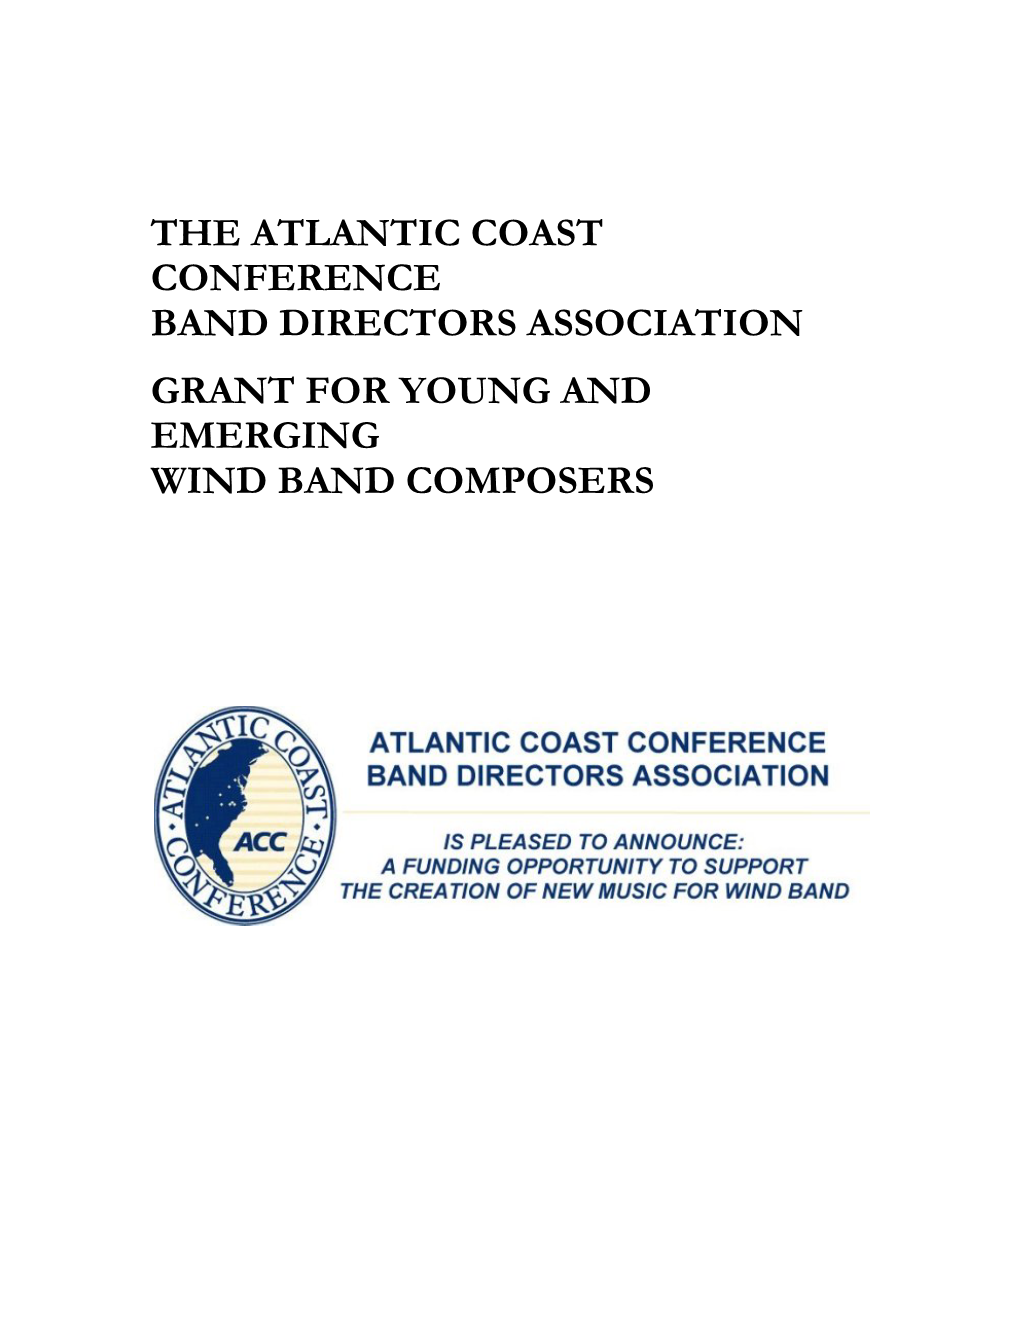 The Atlantic Coast Conference Band Directors Association